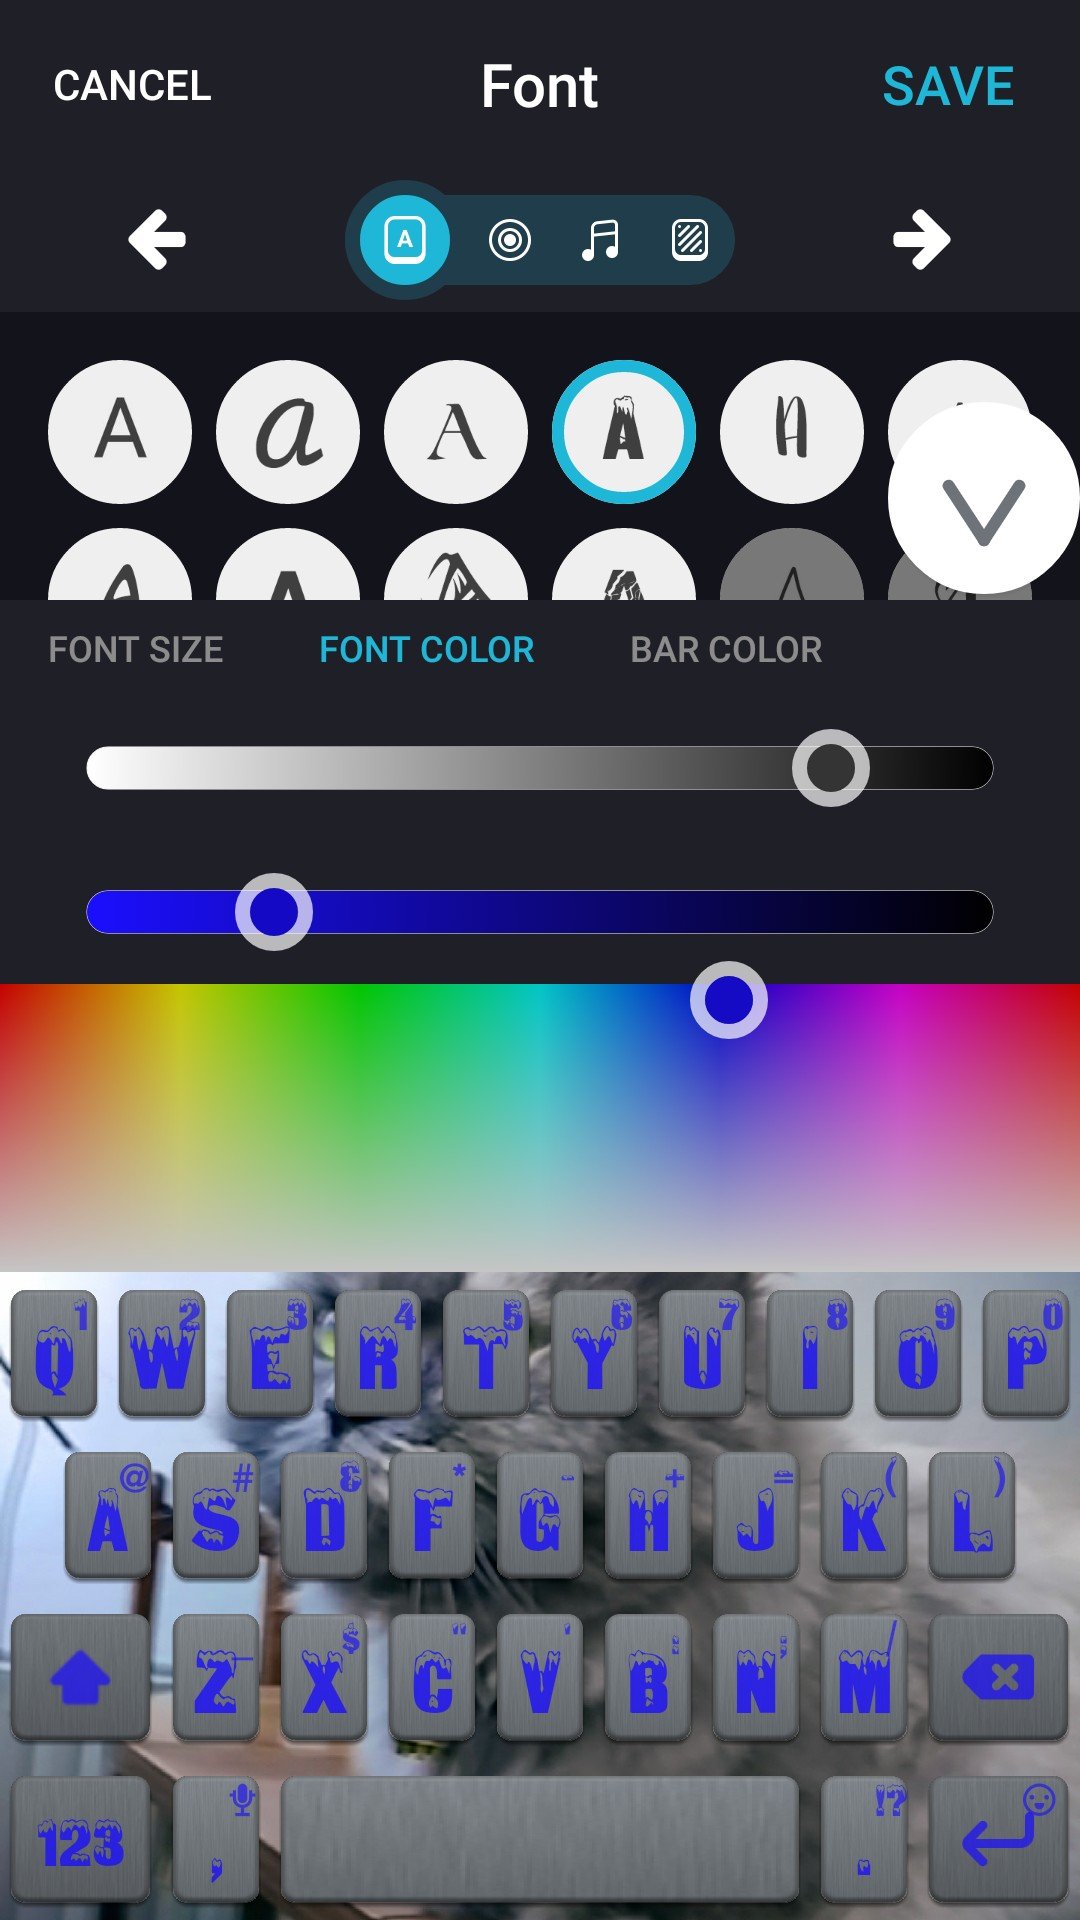 FancyKey Keyboard - Cool Fonts, Emoji, GIF,Sticker